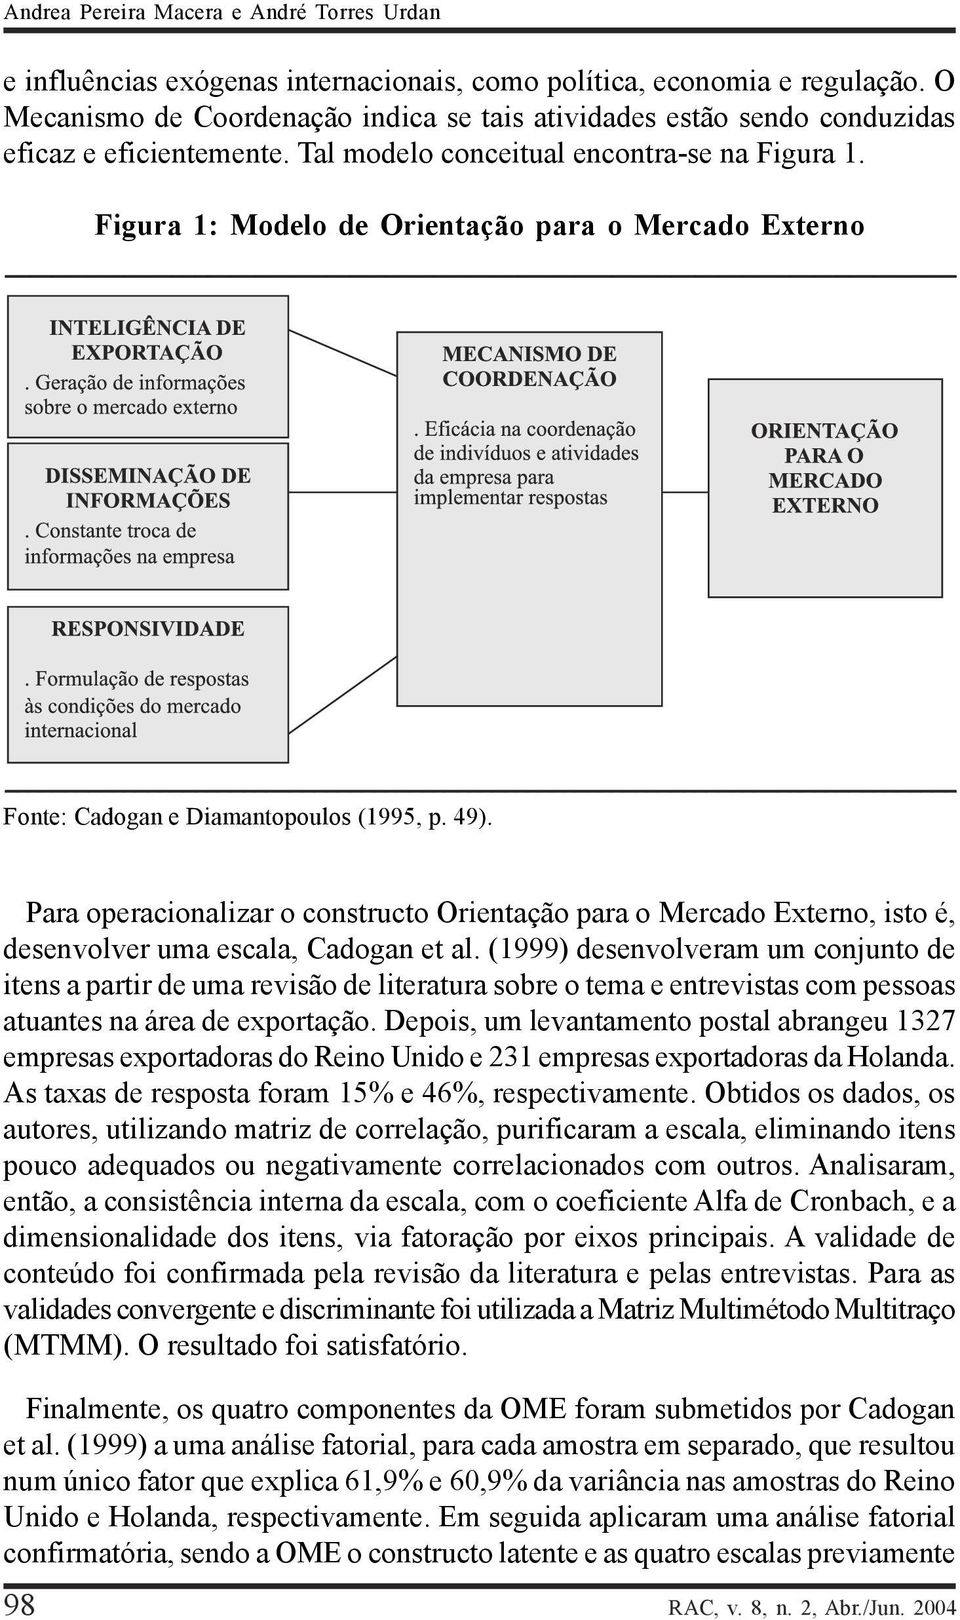 Figura 1: Modelo de Orientação para o Mercado Externo Fonte: Cadogan e Diamantopoulos (1995, p. 49).